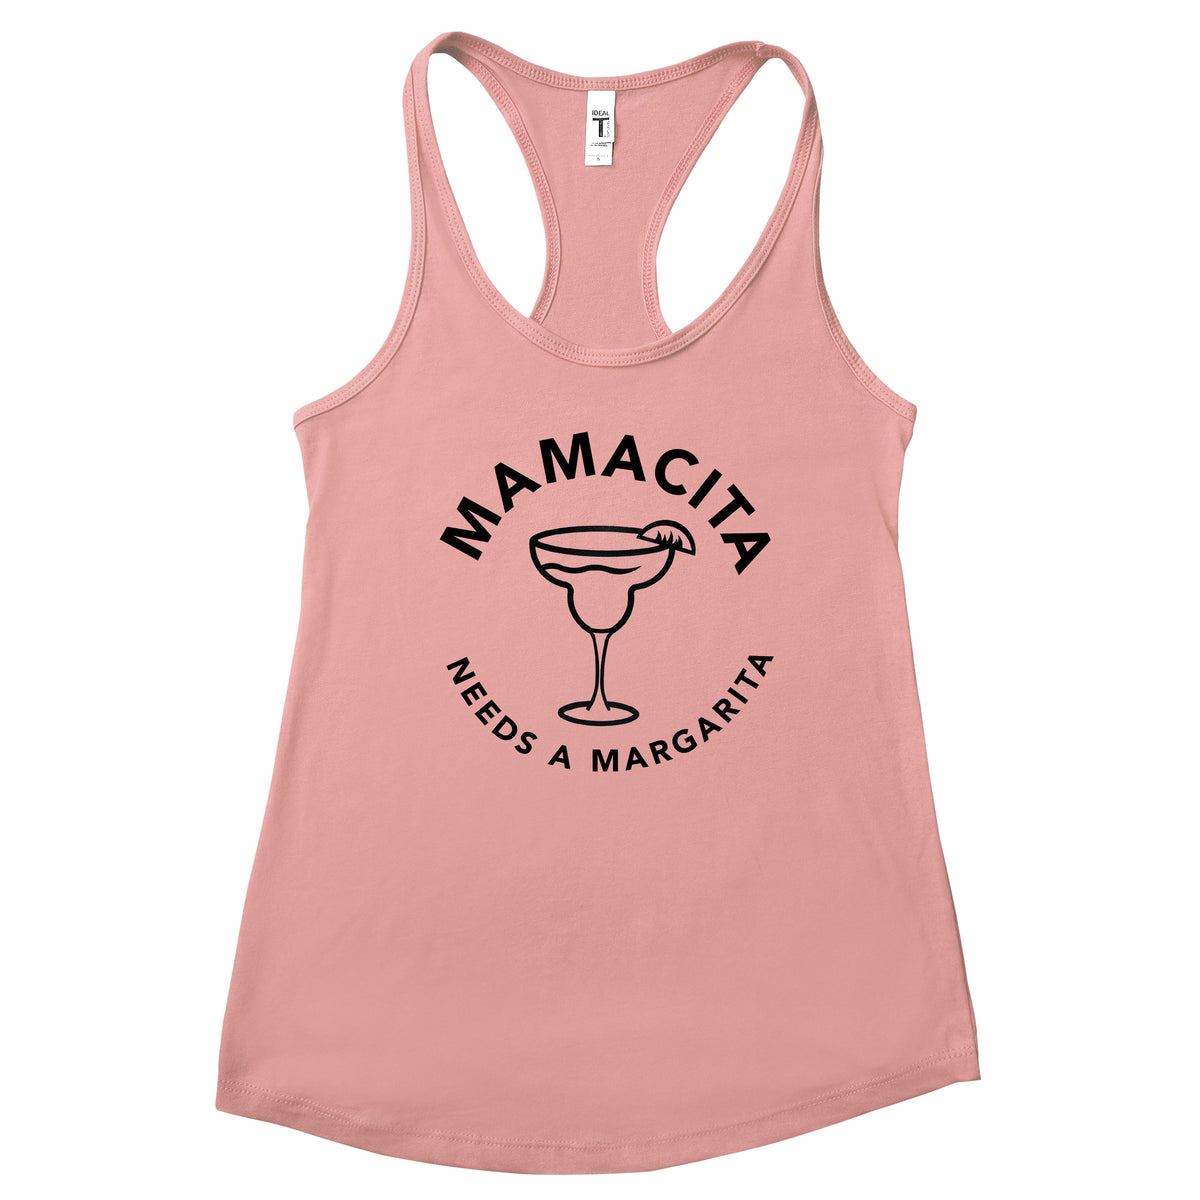 Mamacita Needs a Margarita Tank Top